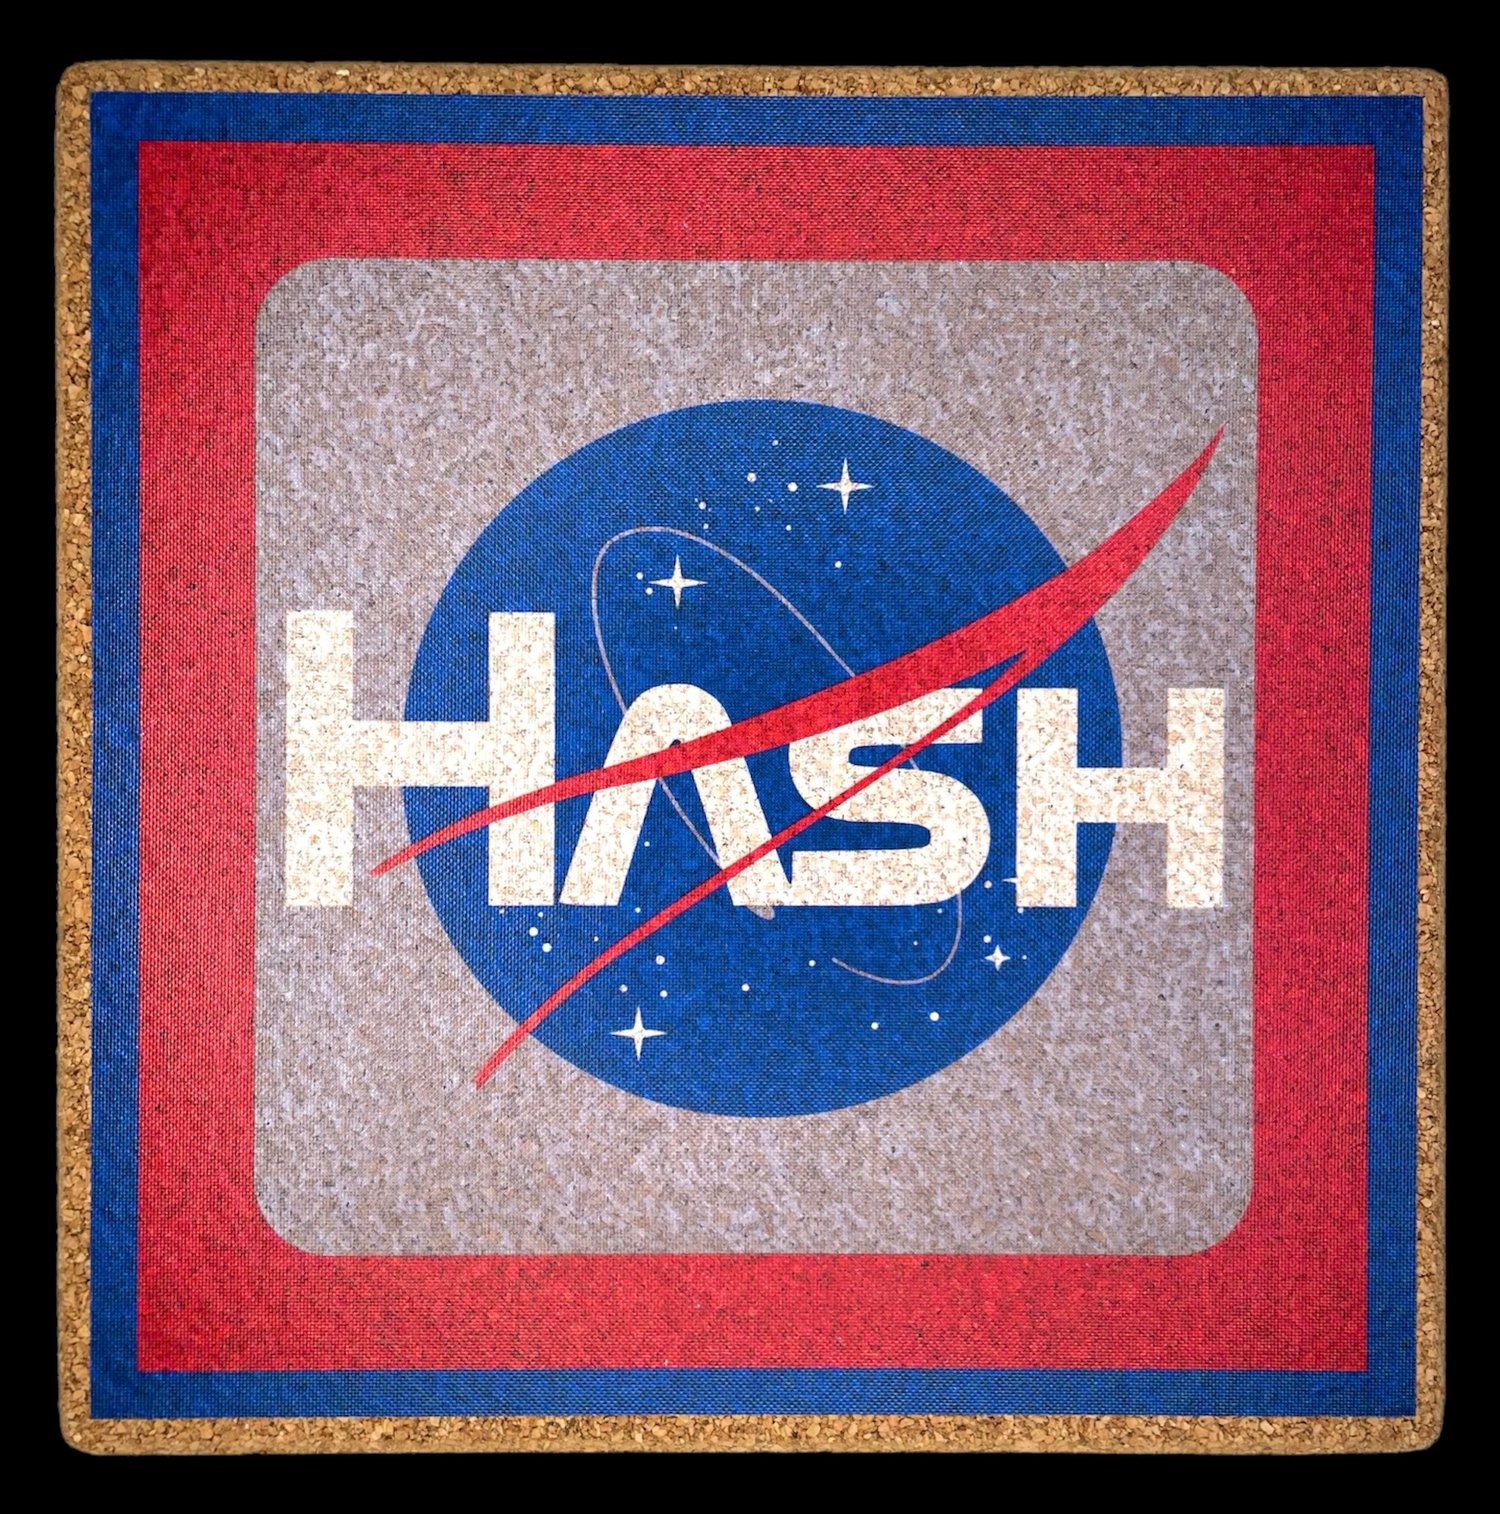 NASA Hash Square